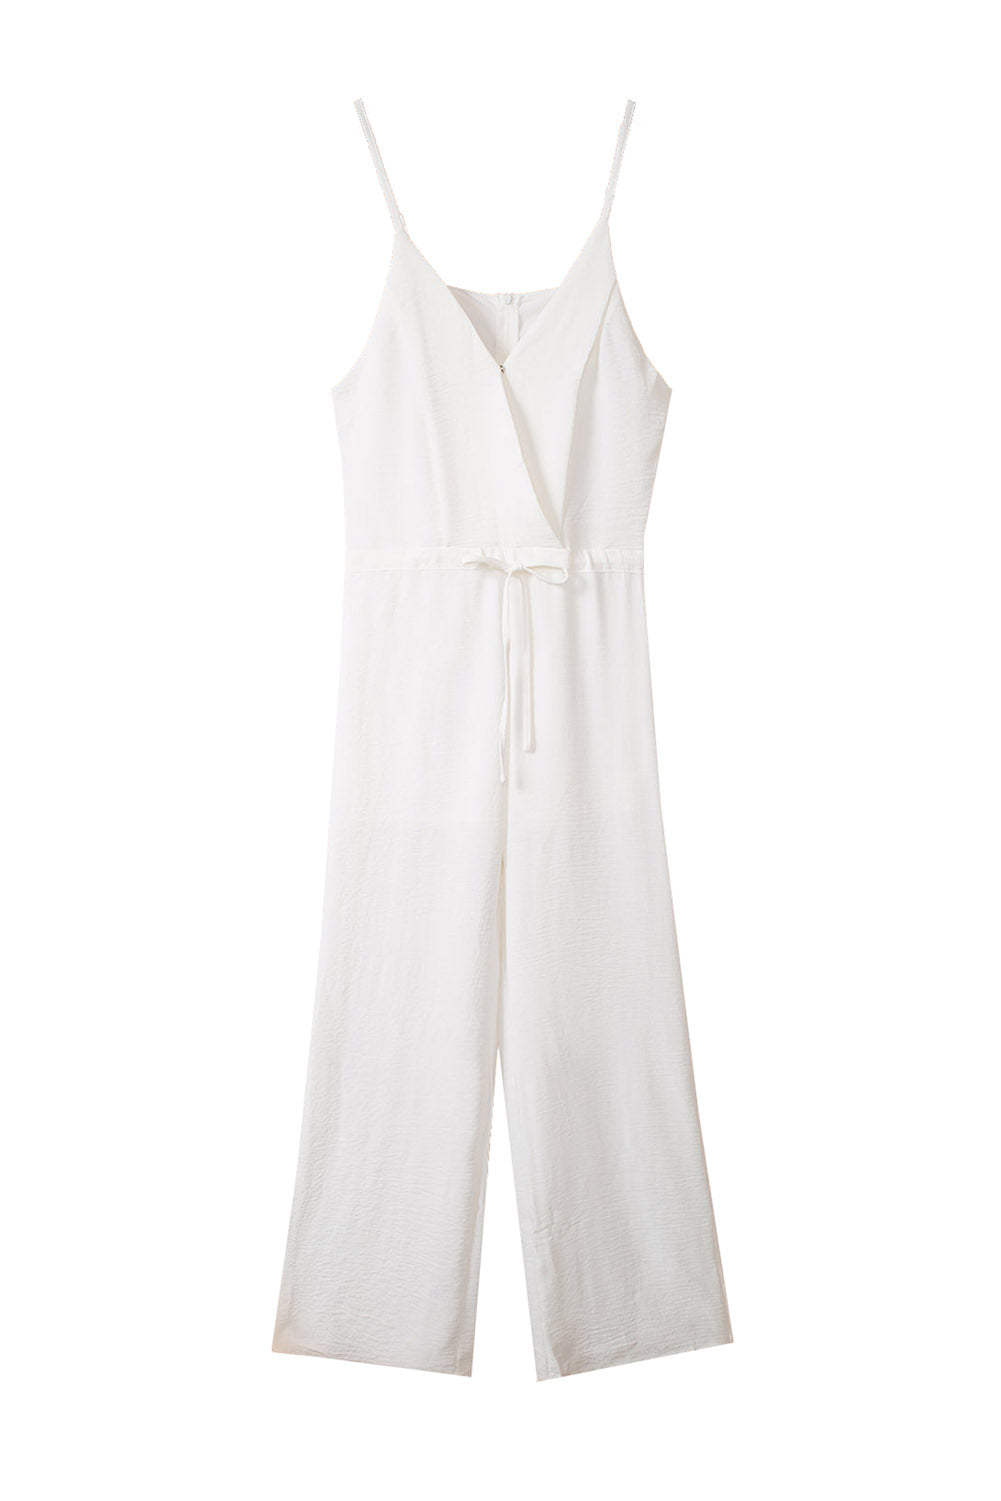 ΑΜΕΣΑ ΔΙΑΘΕΣΙΜΟ: άσπρη αμάνικη ολόσωμη φόρμα JAUNITA